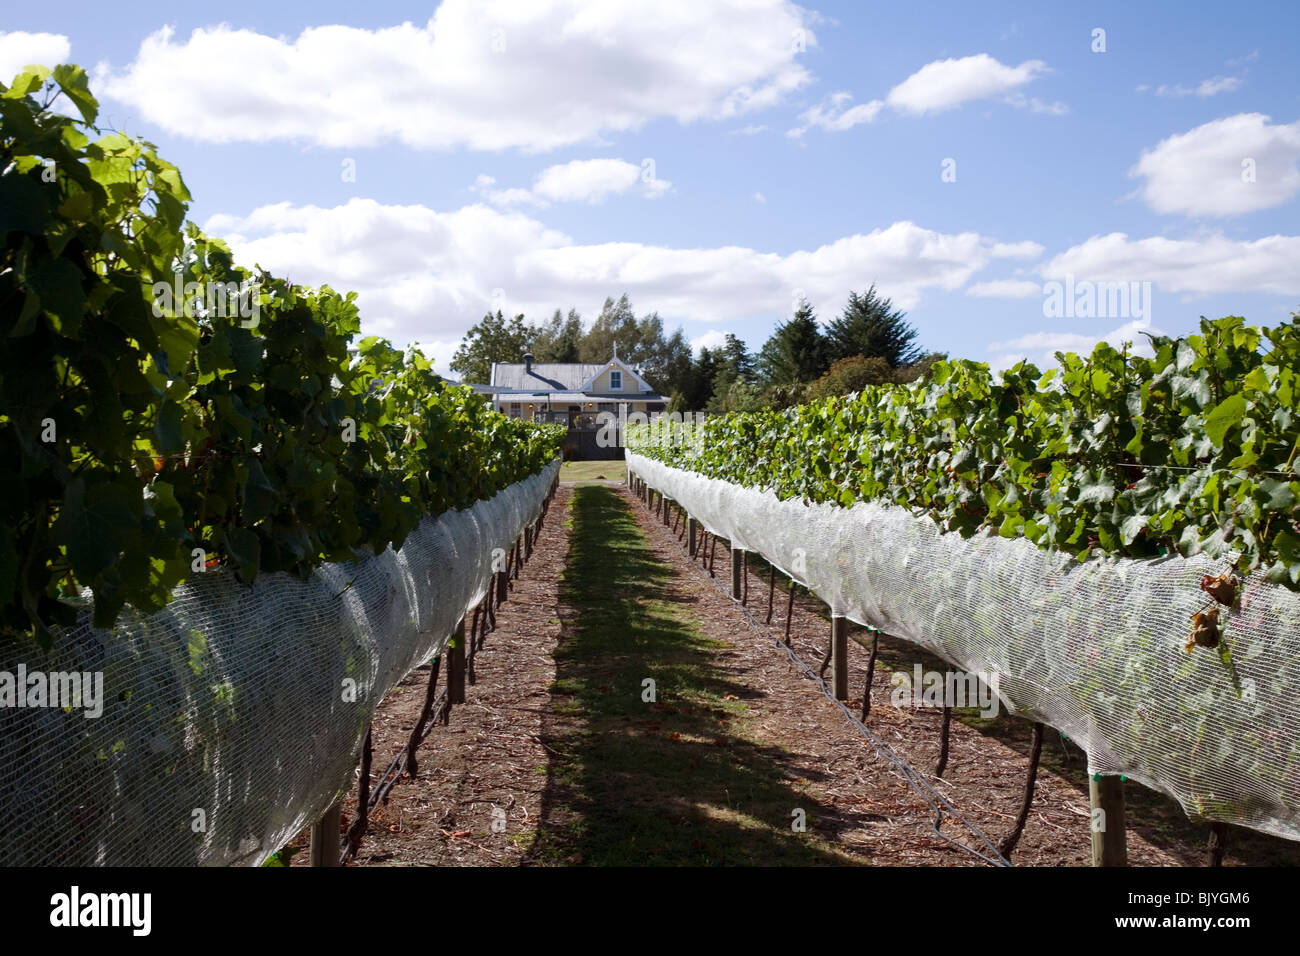 This small vineyard serves a winery and restaurant at Huka Falls Resort near Taupo New Zealand Stock Photo